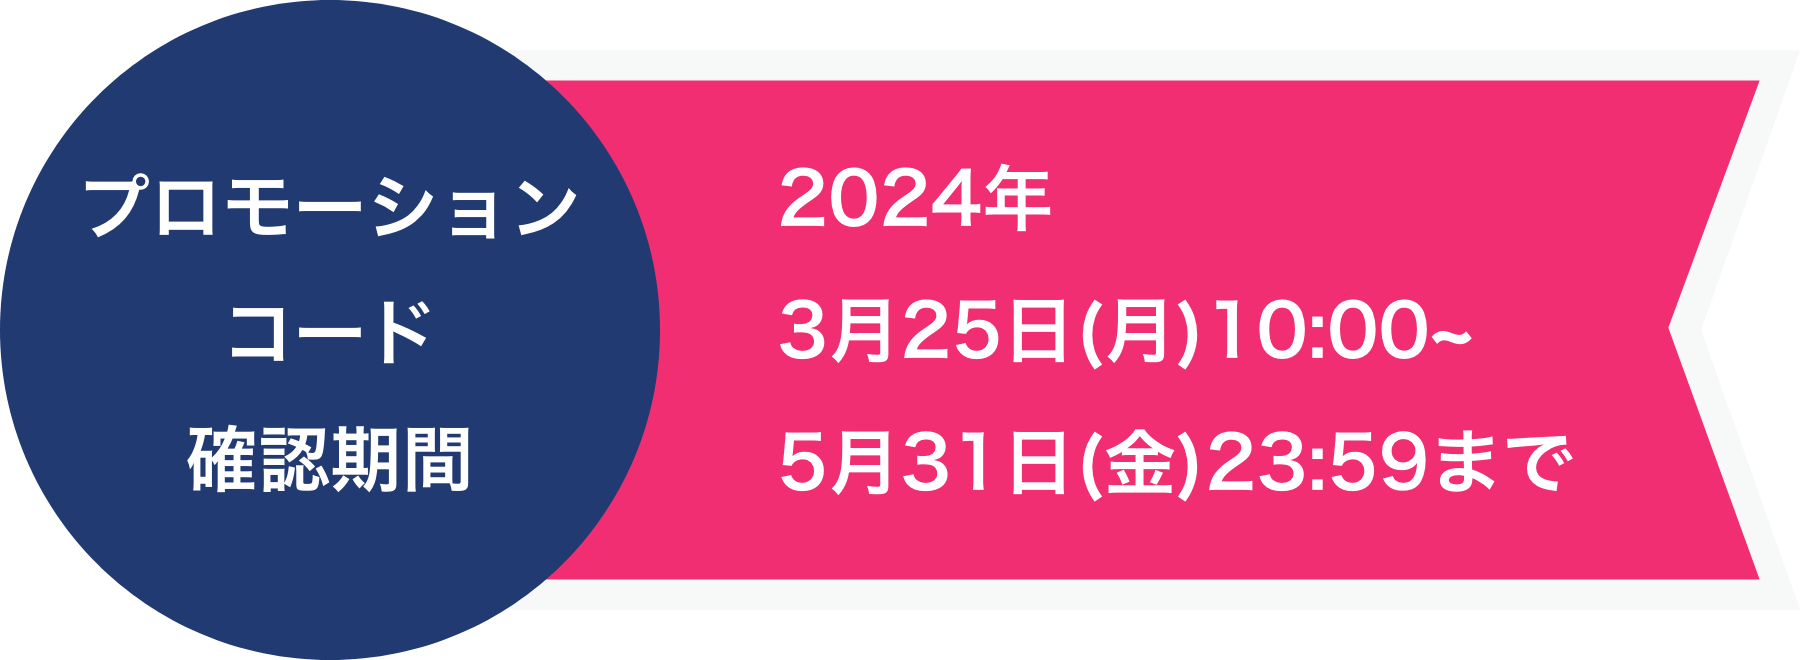 プロモーションコード確認可能期間 2023年3月24日(金)10:00〜5月31日(水)23:59まで